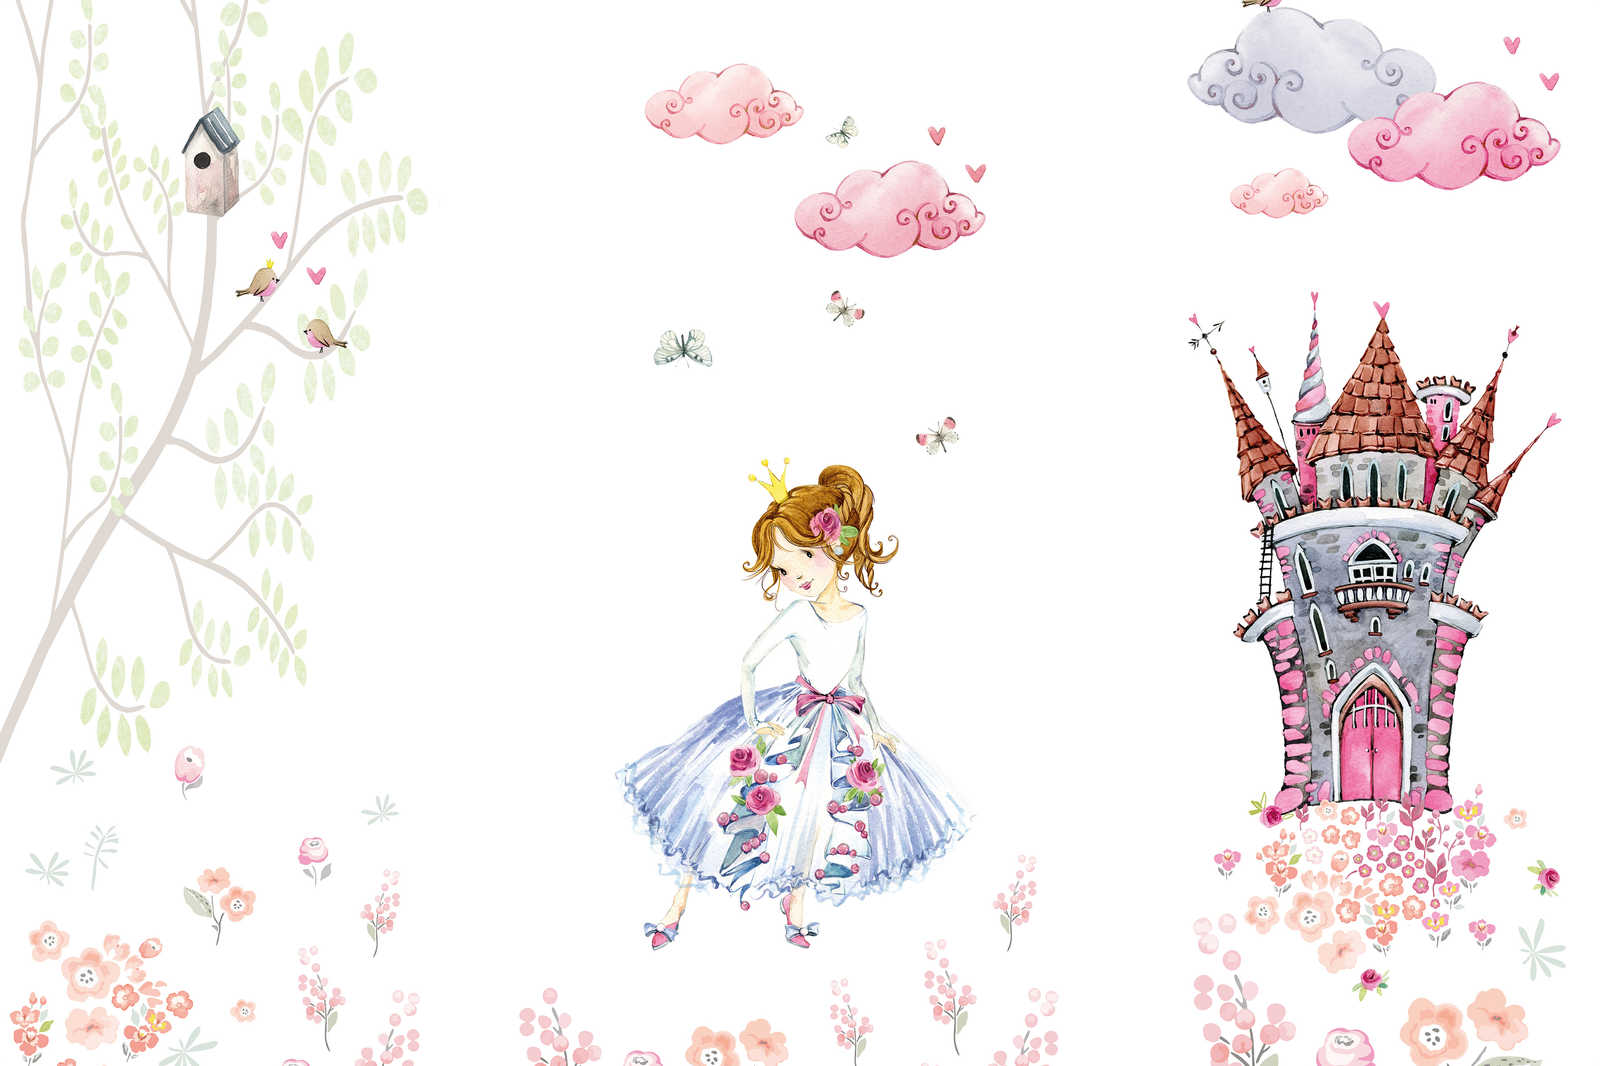             Cuadro en lienzo con princesa en castillo jardín habitación infantil - 0,90 m x 0,60 m
        